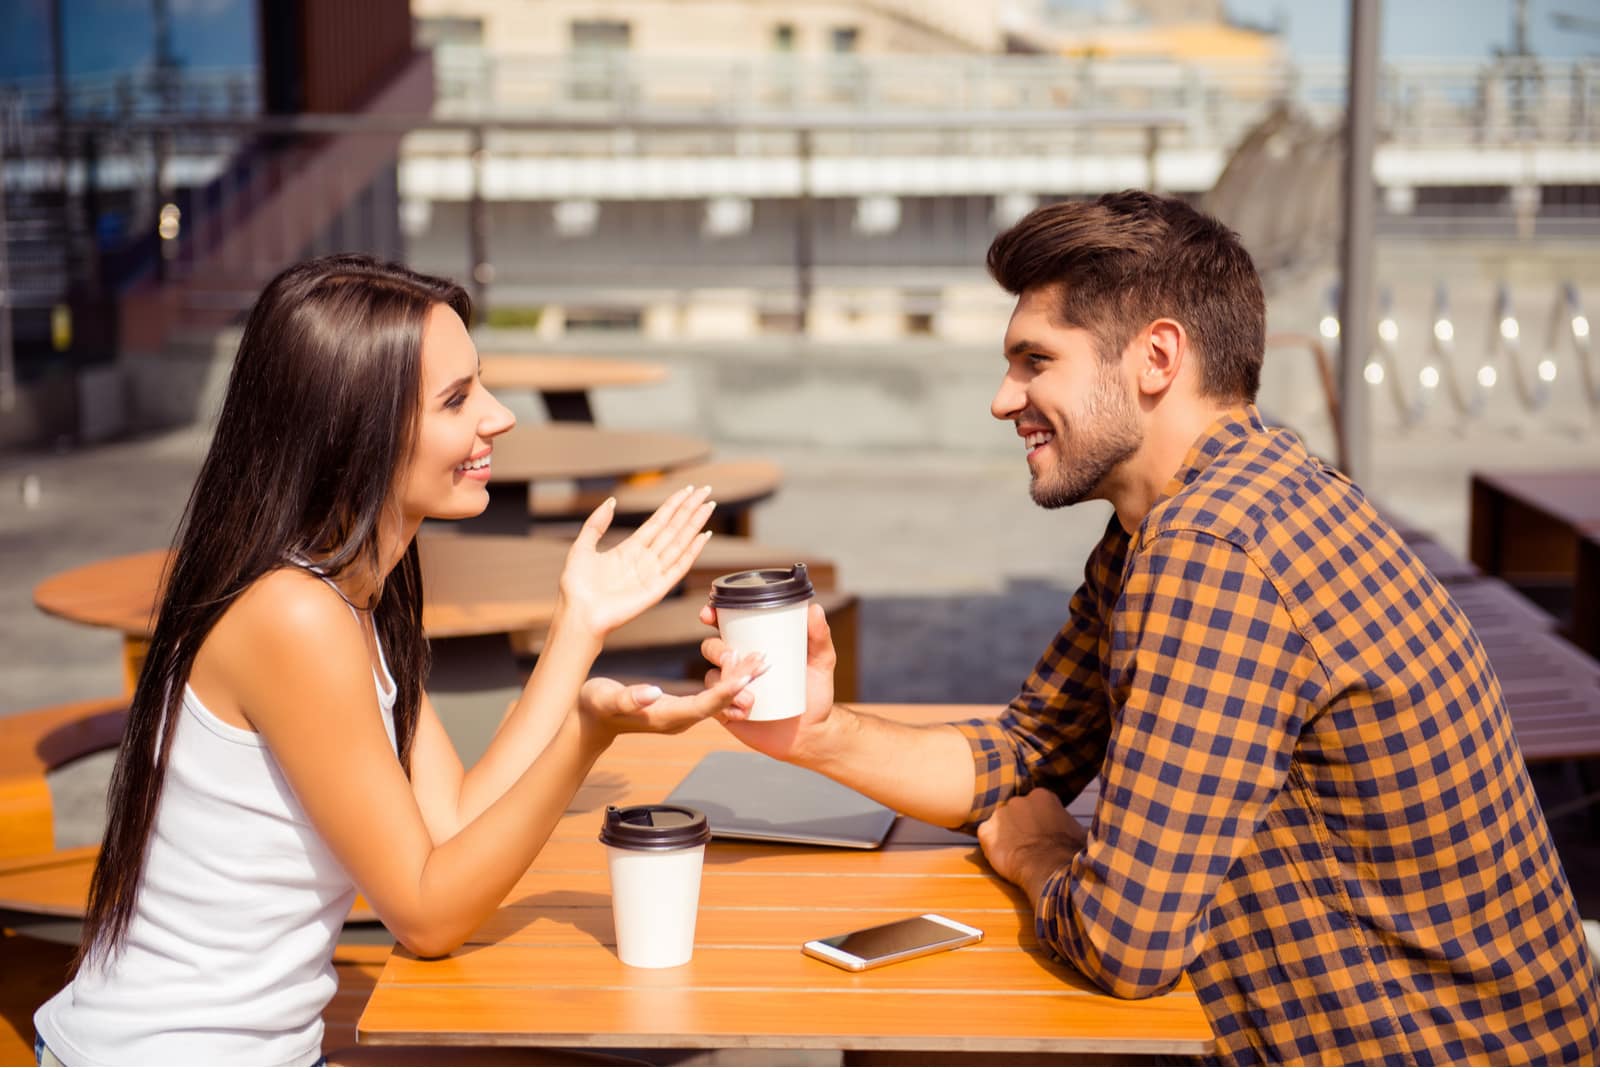 smiling woman talking to man at cafe